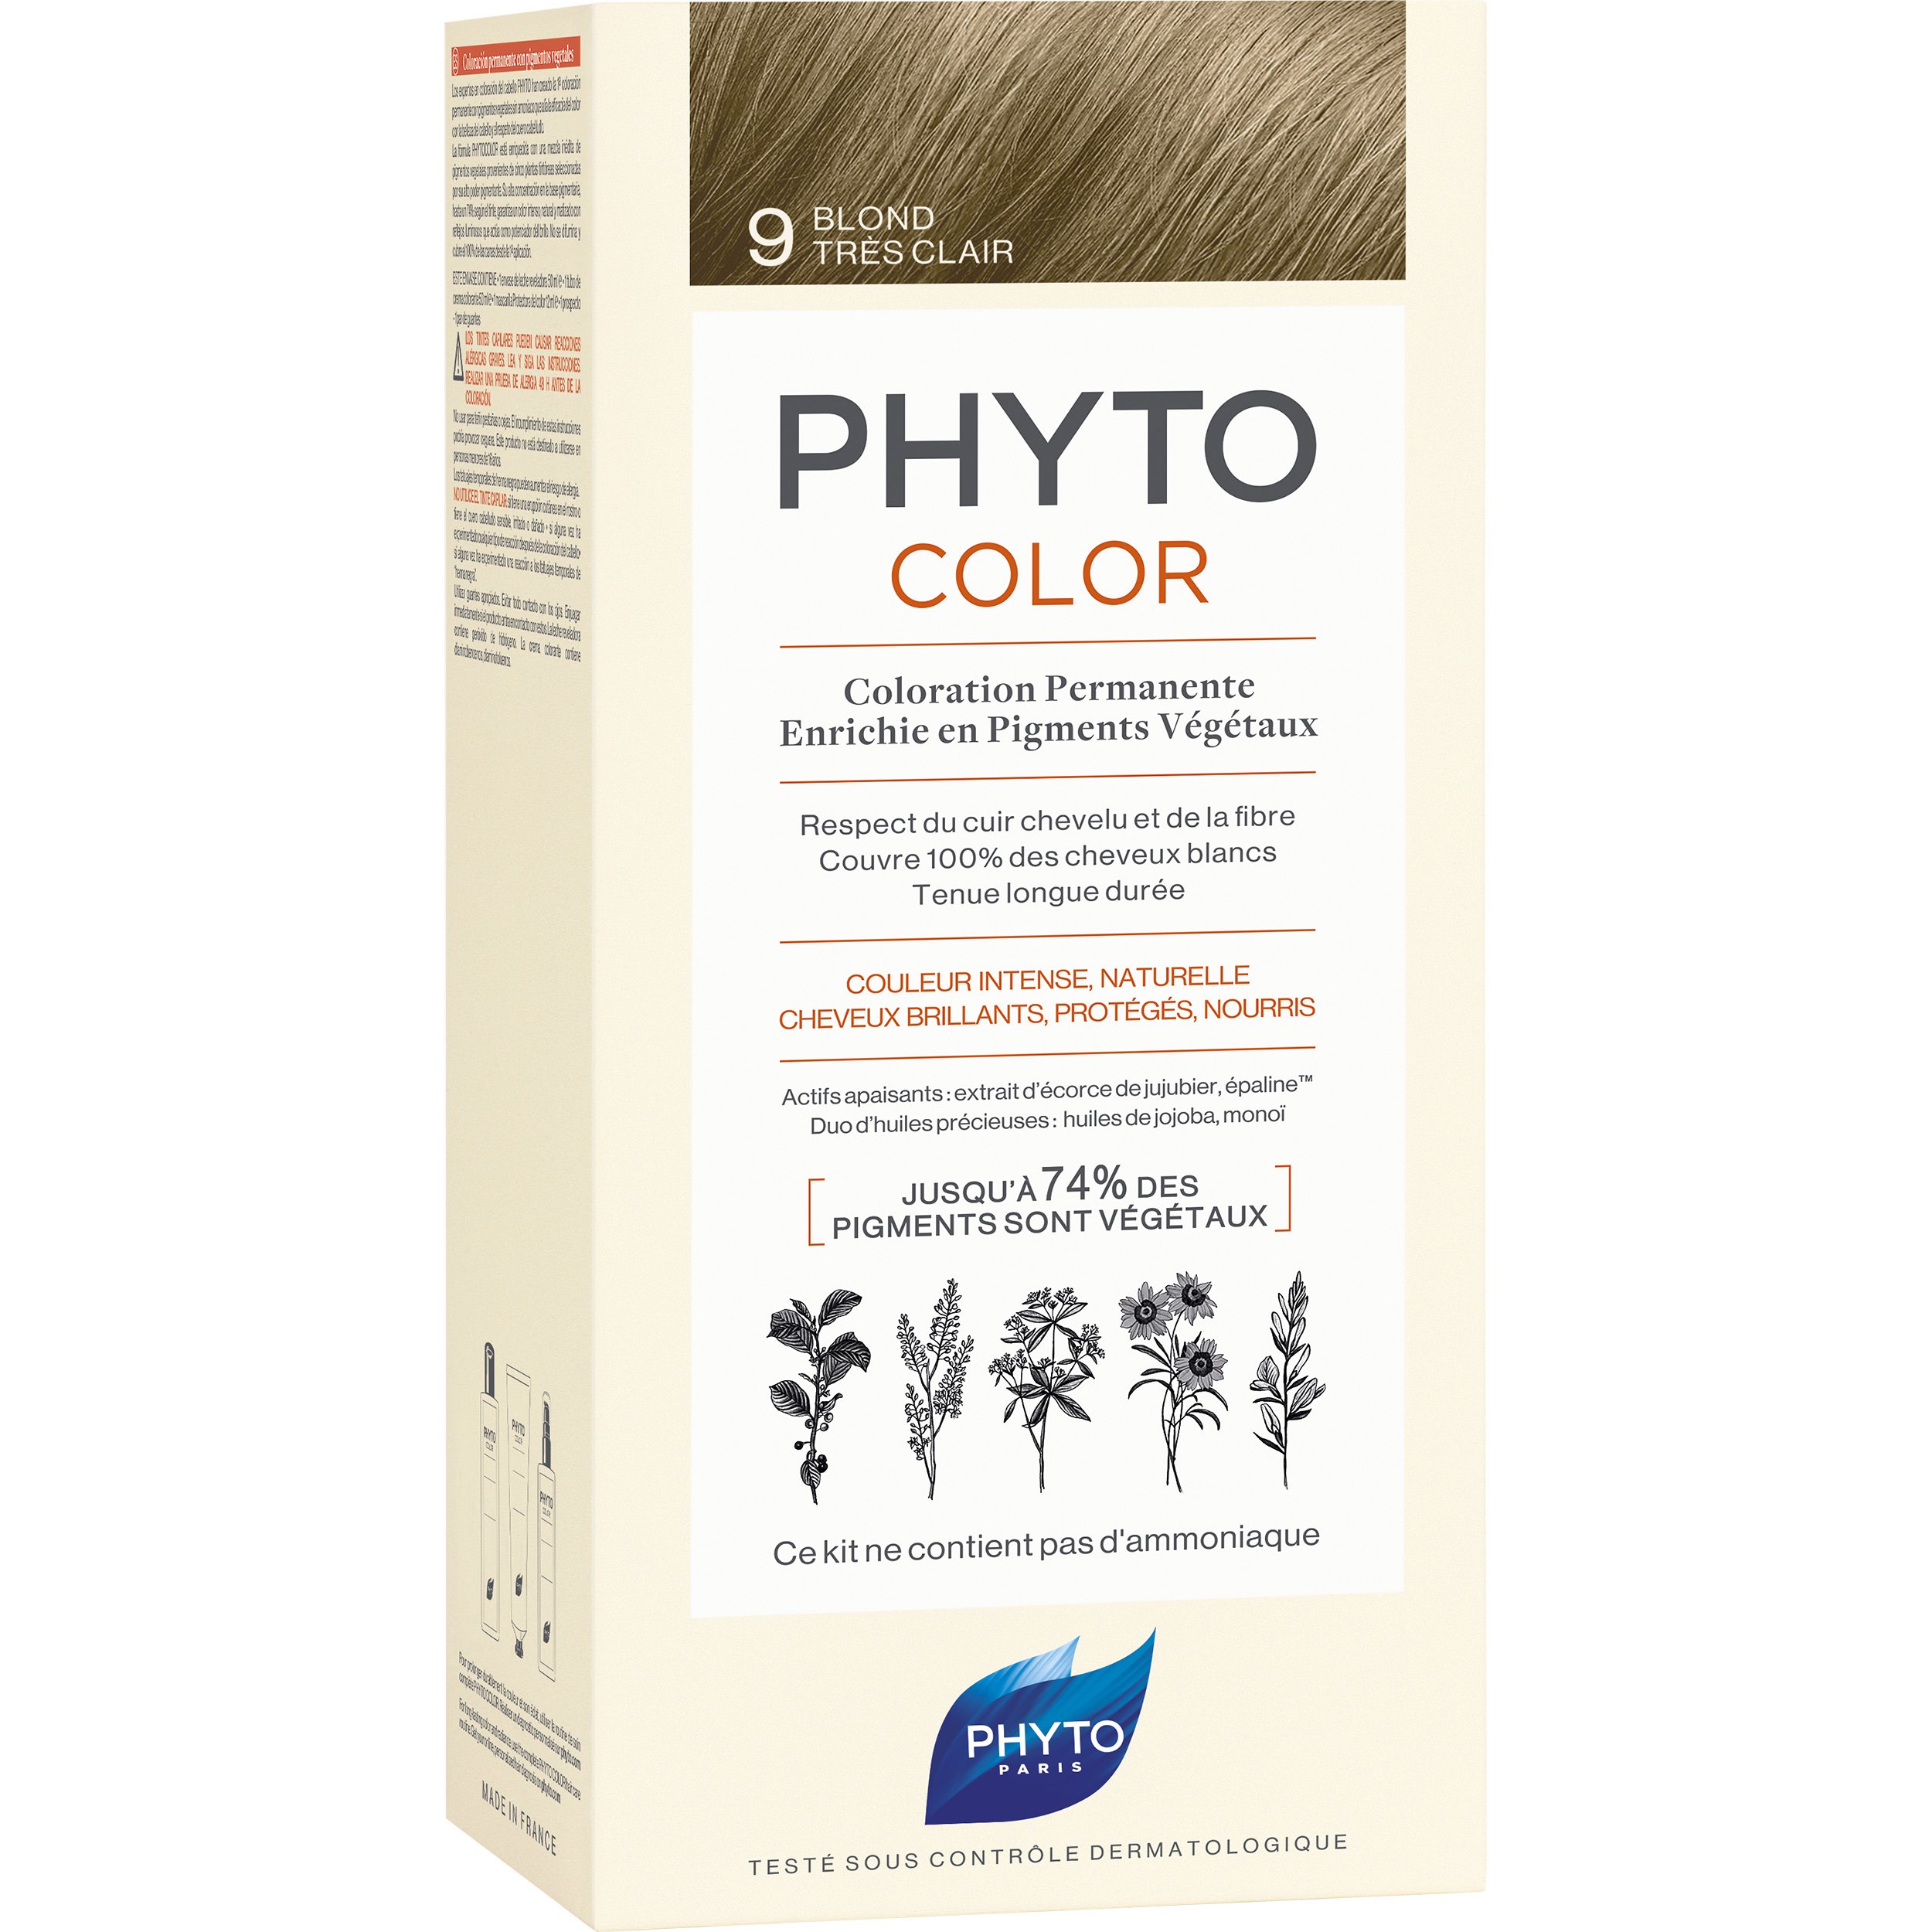 Phyto PhytoColor Coloration Permanente η No1 Μόνιμη Βαφή Μαλλιών Χωρίς Χρωστικές Ουσίες & Αμμωνία – 9 Ξανθό Πολύ Ανοιχτό